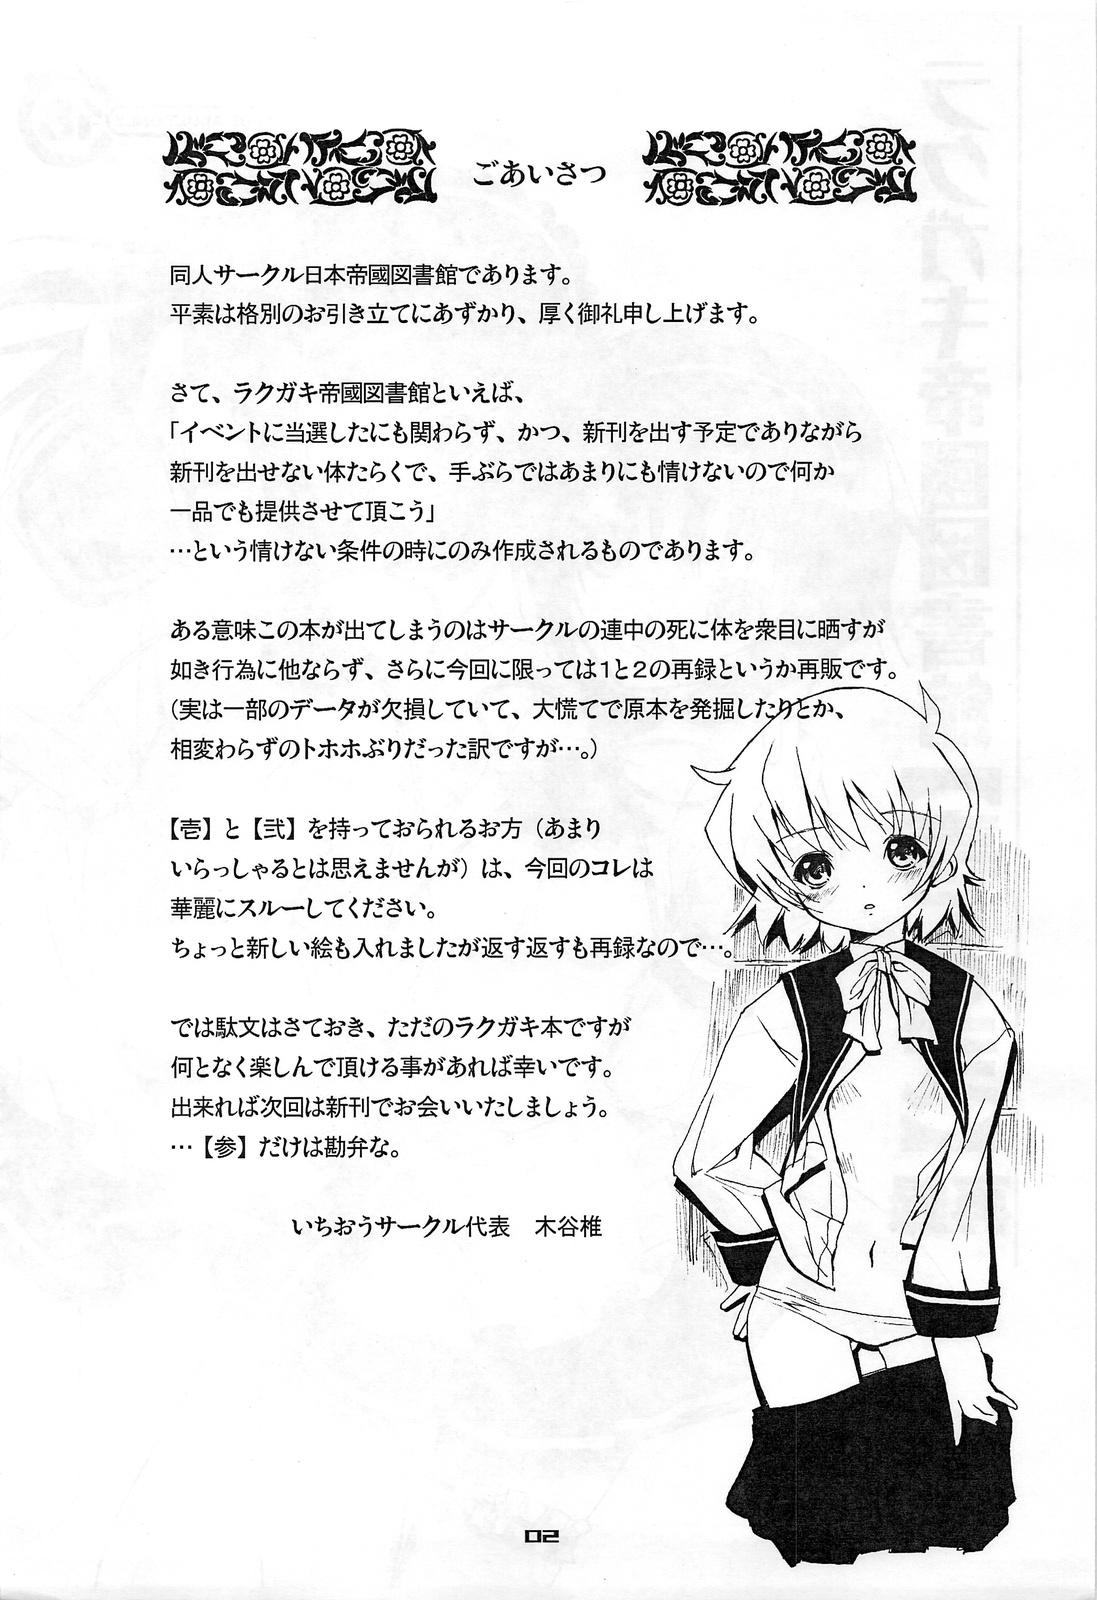 Hardcore Sex Rakugaki Teikoku Toshokan "Ichi to Ni" Sairoku Big Black Cock - Page 2